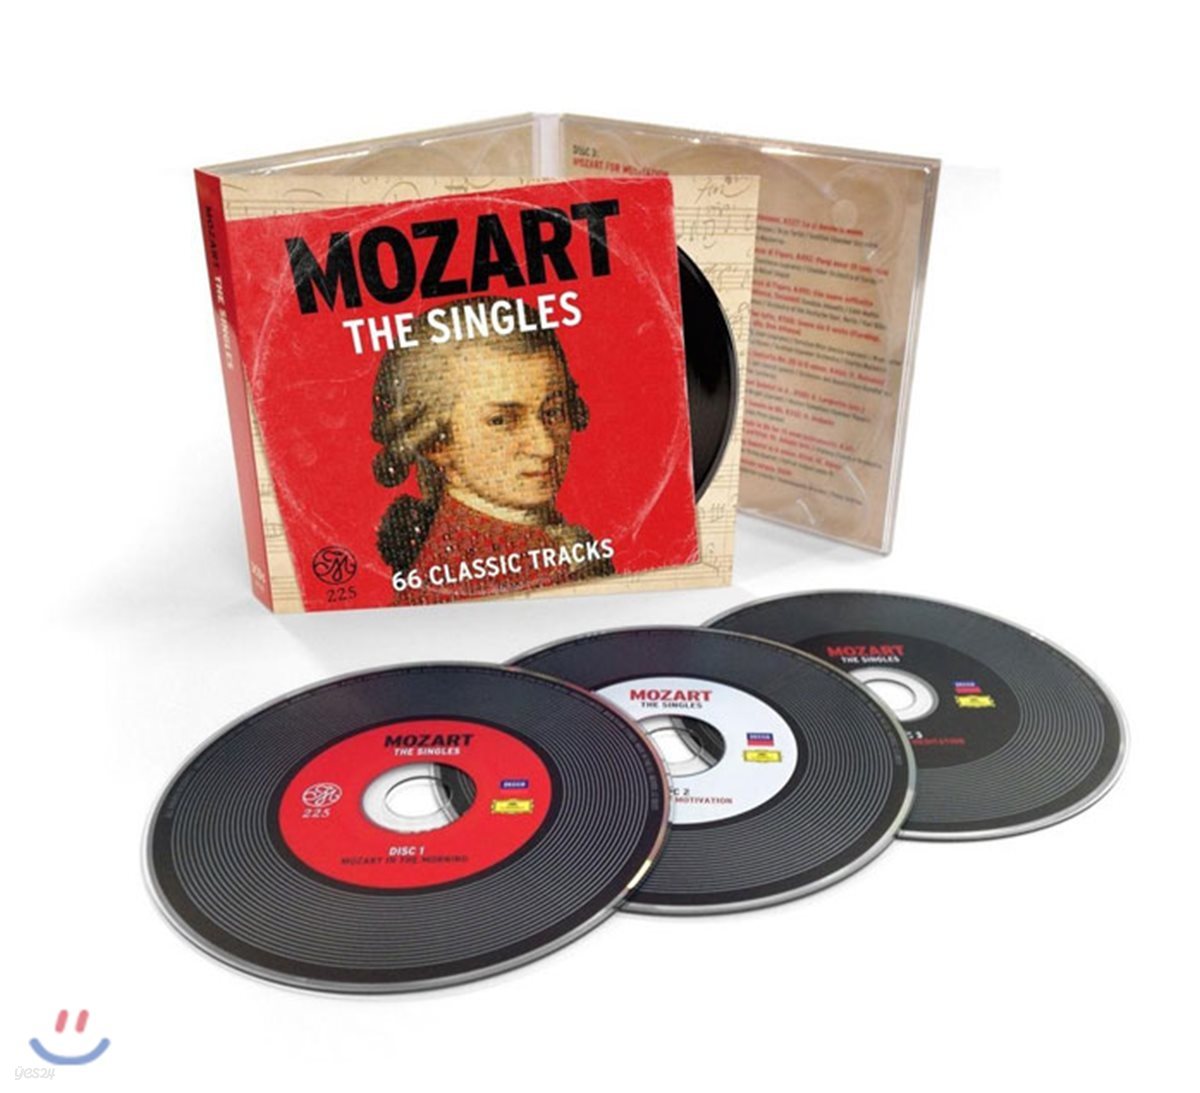 모차르트 베스트 66 클래식 곡 (Mozart: The Singles - 66 Classic Tracks)